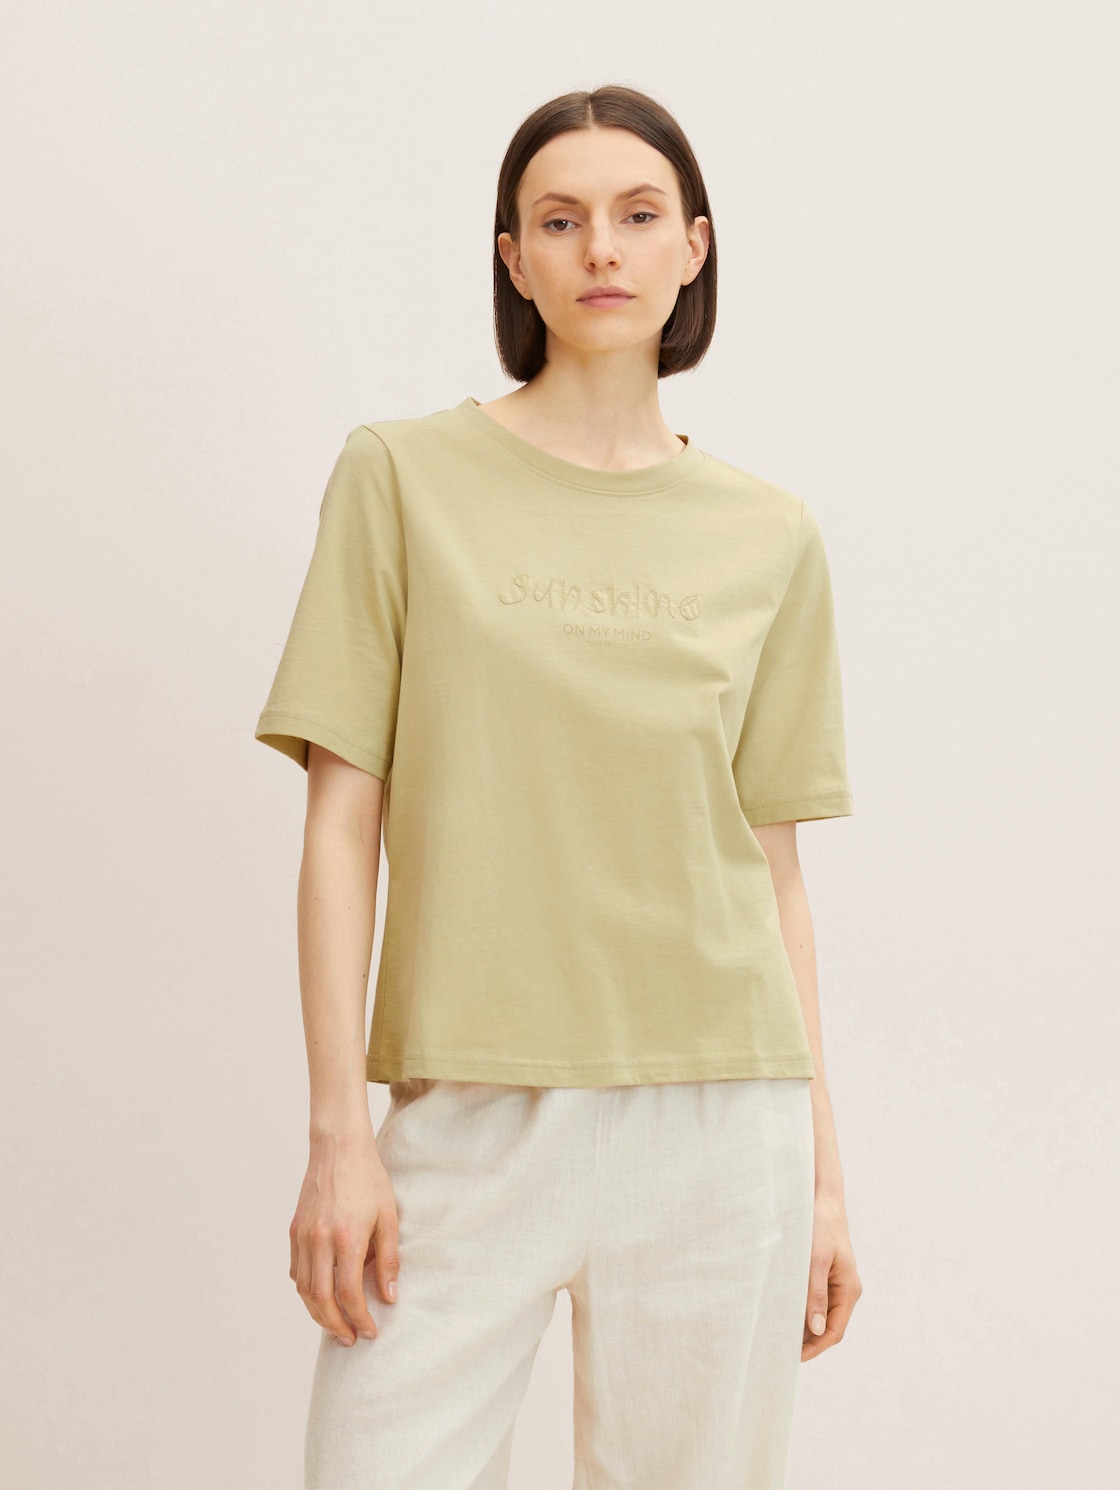 TOM TAILOR Damen T-Shirt mit Textprint, grün, Gr. XXL,